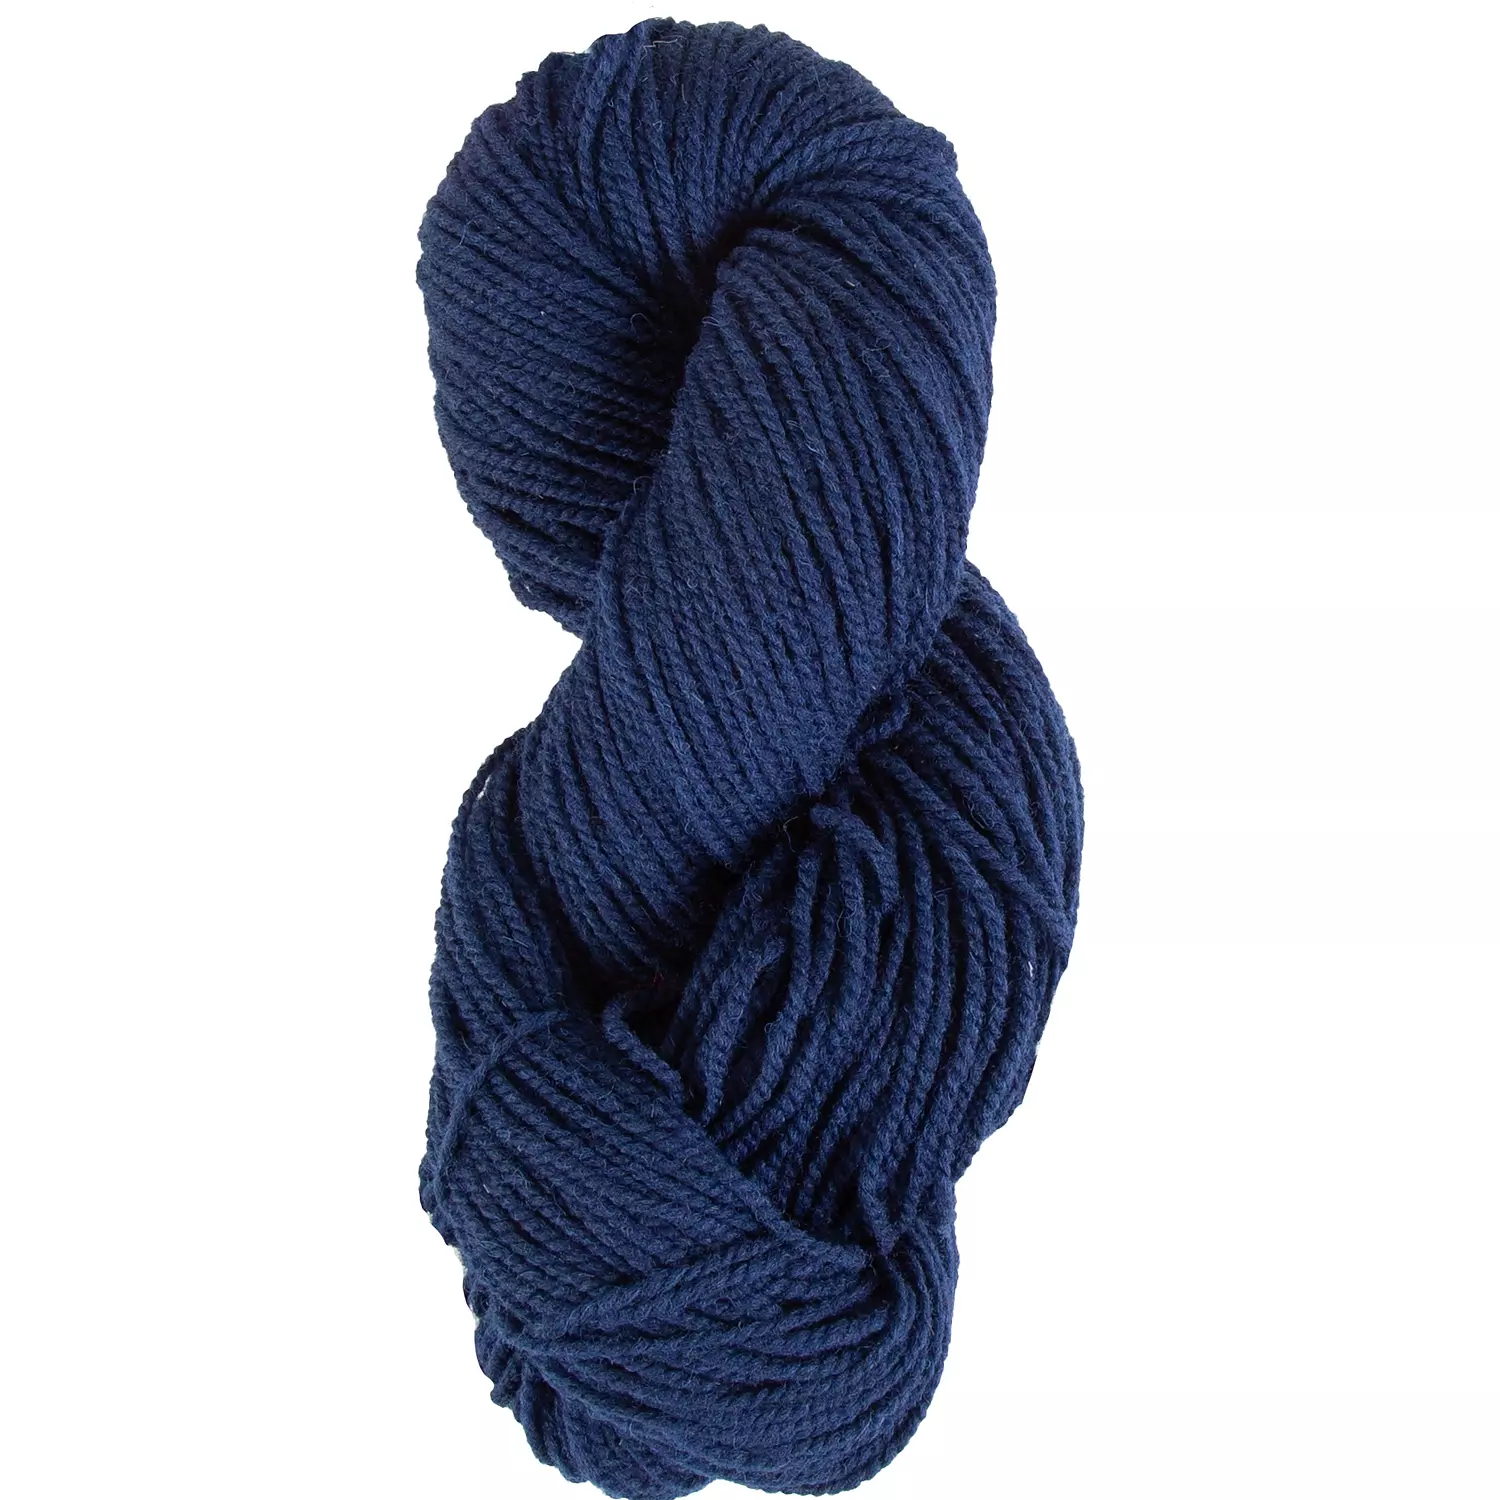 Briggs & Little - Heritage, 100% wool, 2-ply yarn, navy blue